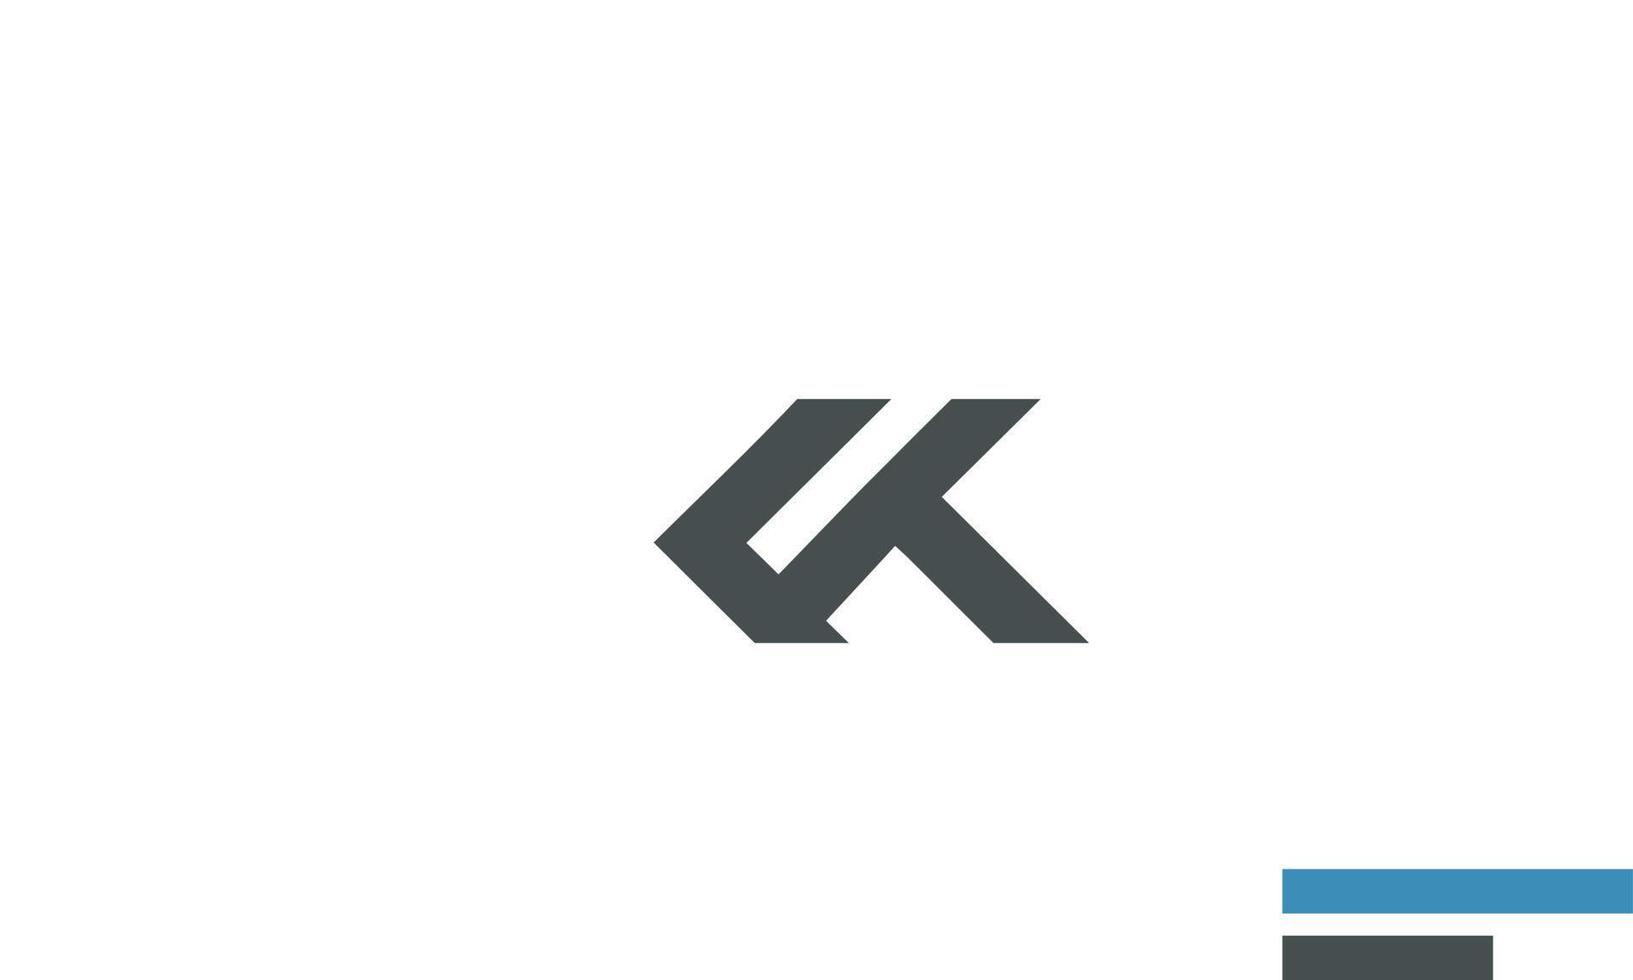 letras do alfabeto iniciais monograma logotipo ck, kc, c e k vetor